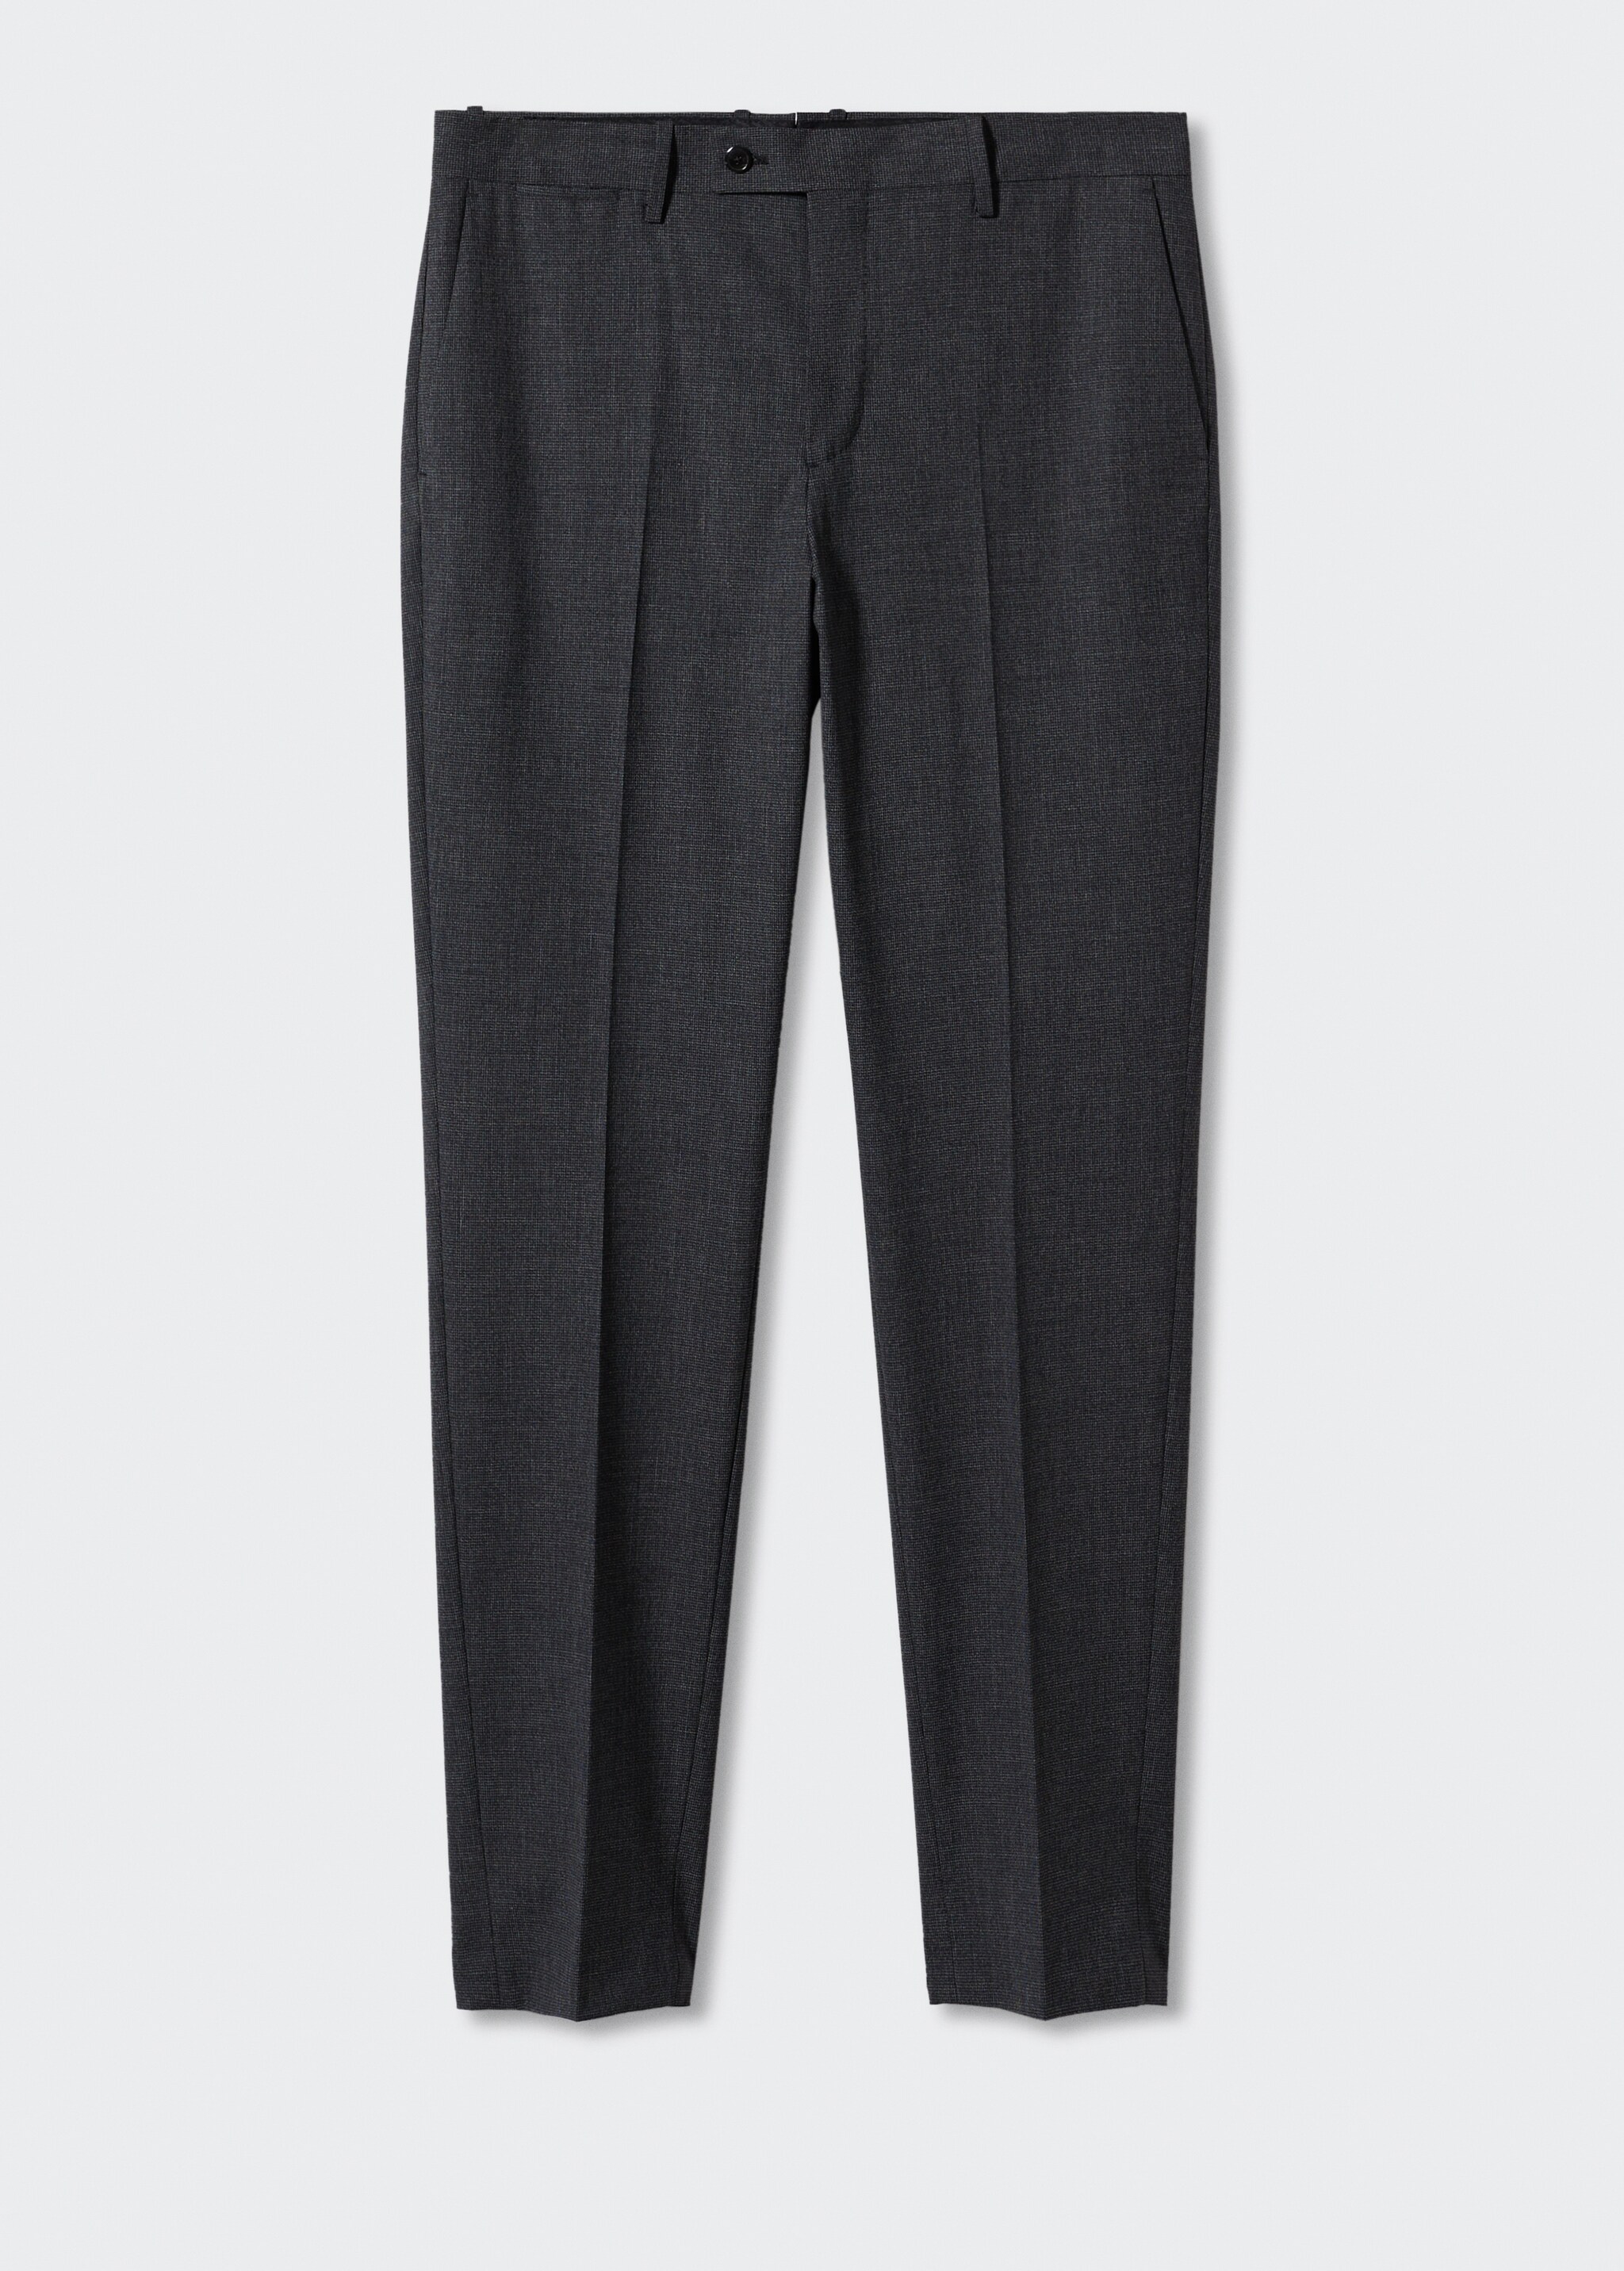 Pantalón traje slim fit lana - Artículo sin modelo